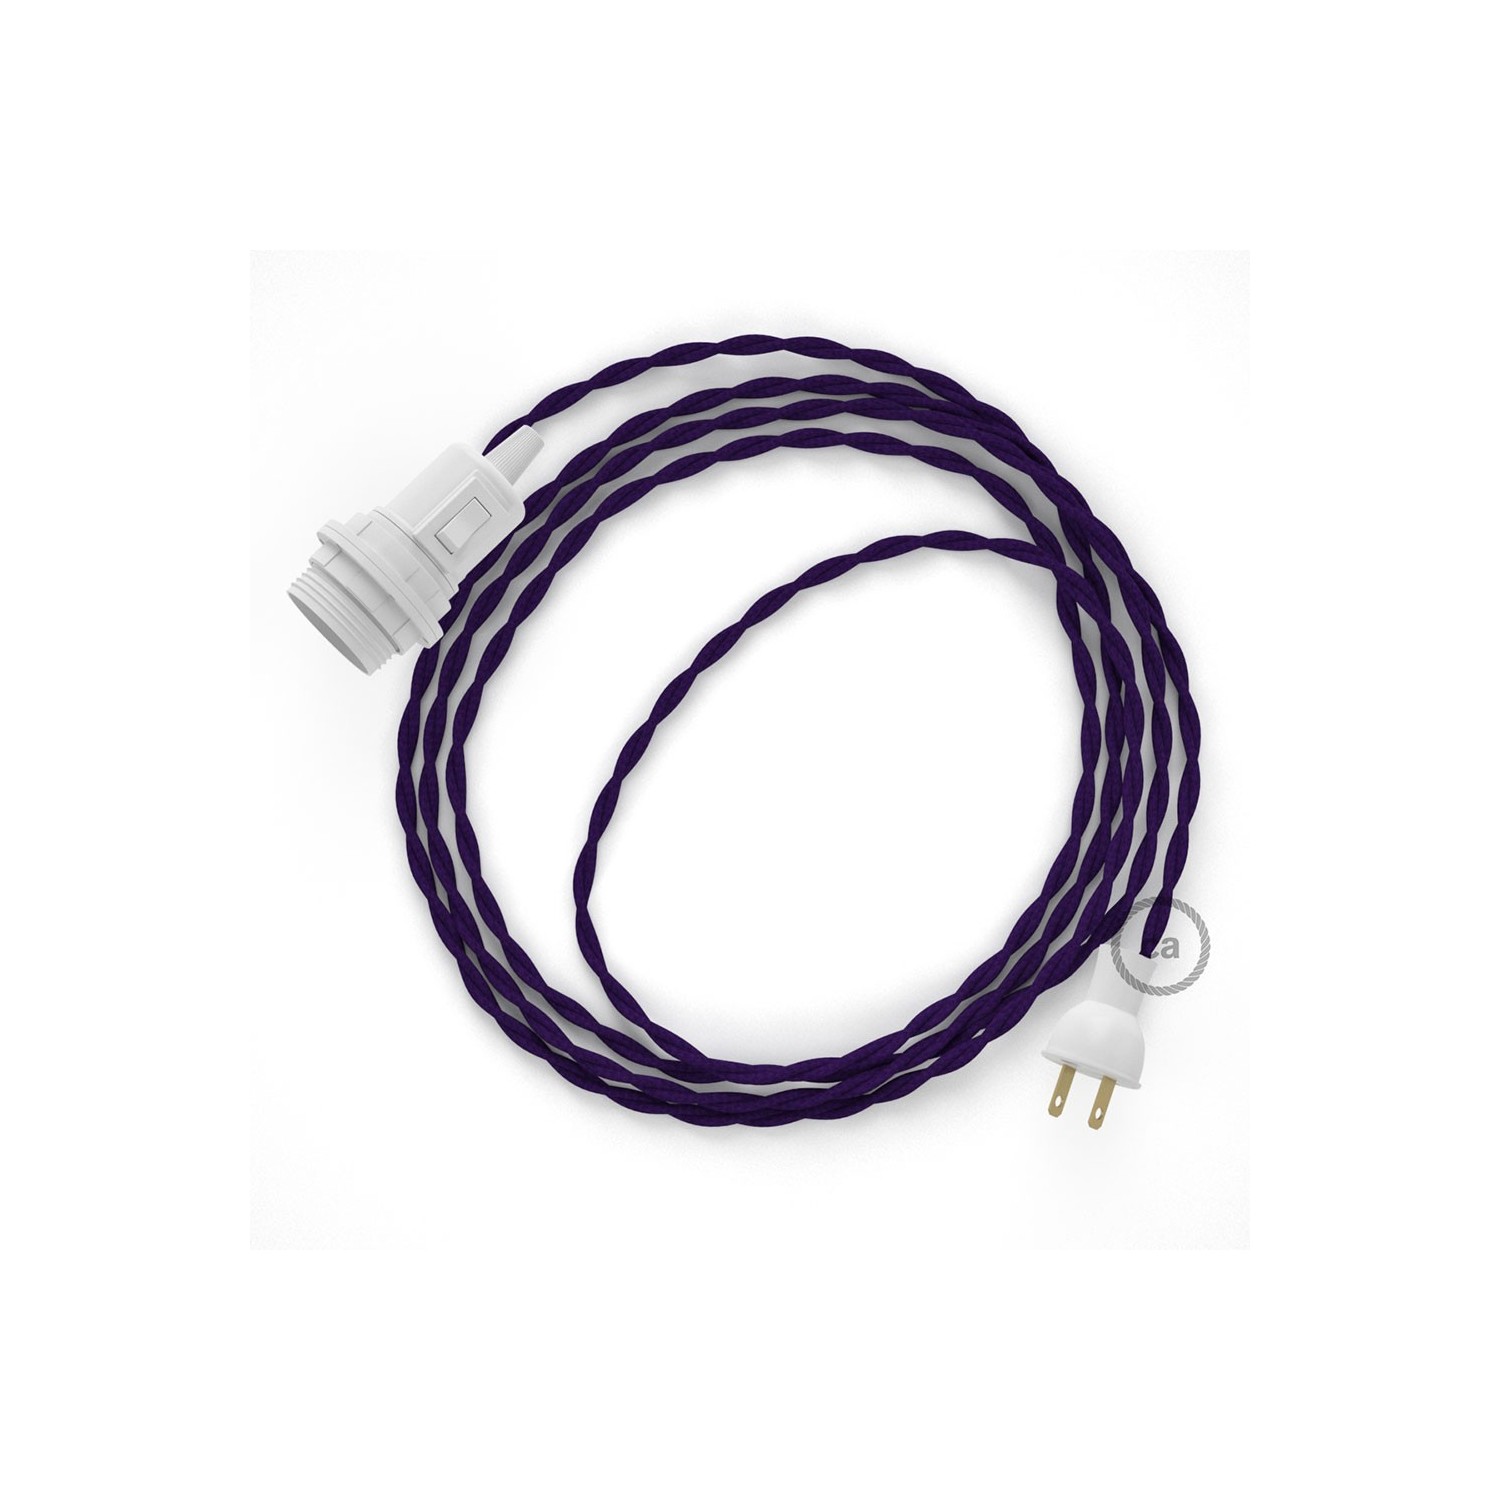 Crea tu Snake para pantalla con cable de Rayón Púrpura TM14, socket y enchufe, y trae la luz donde tu quieras.